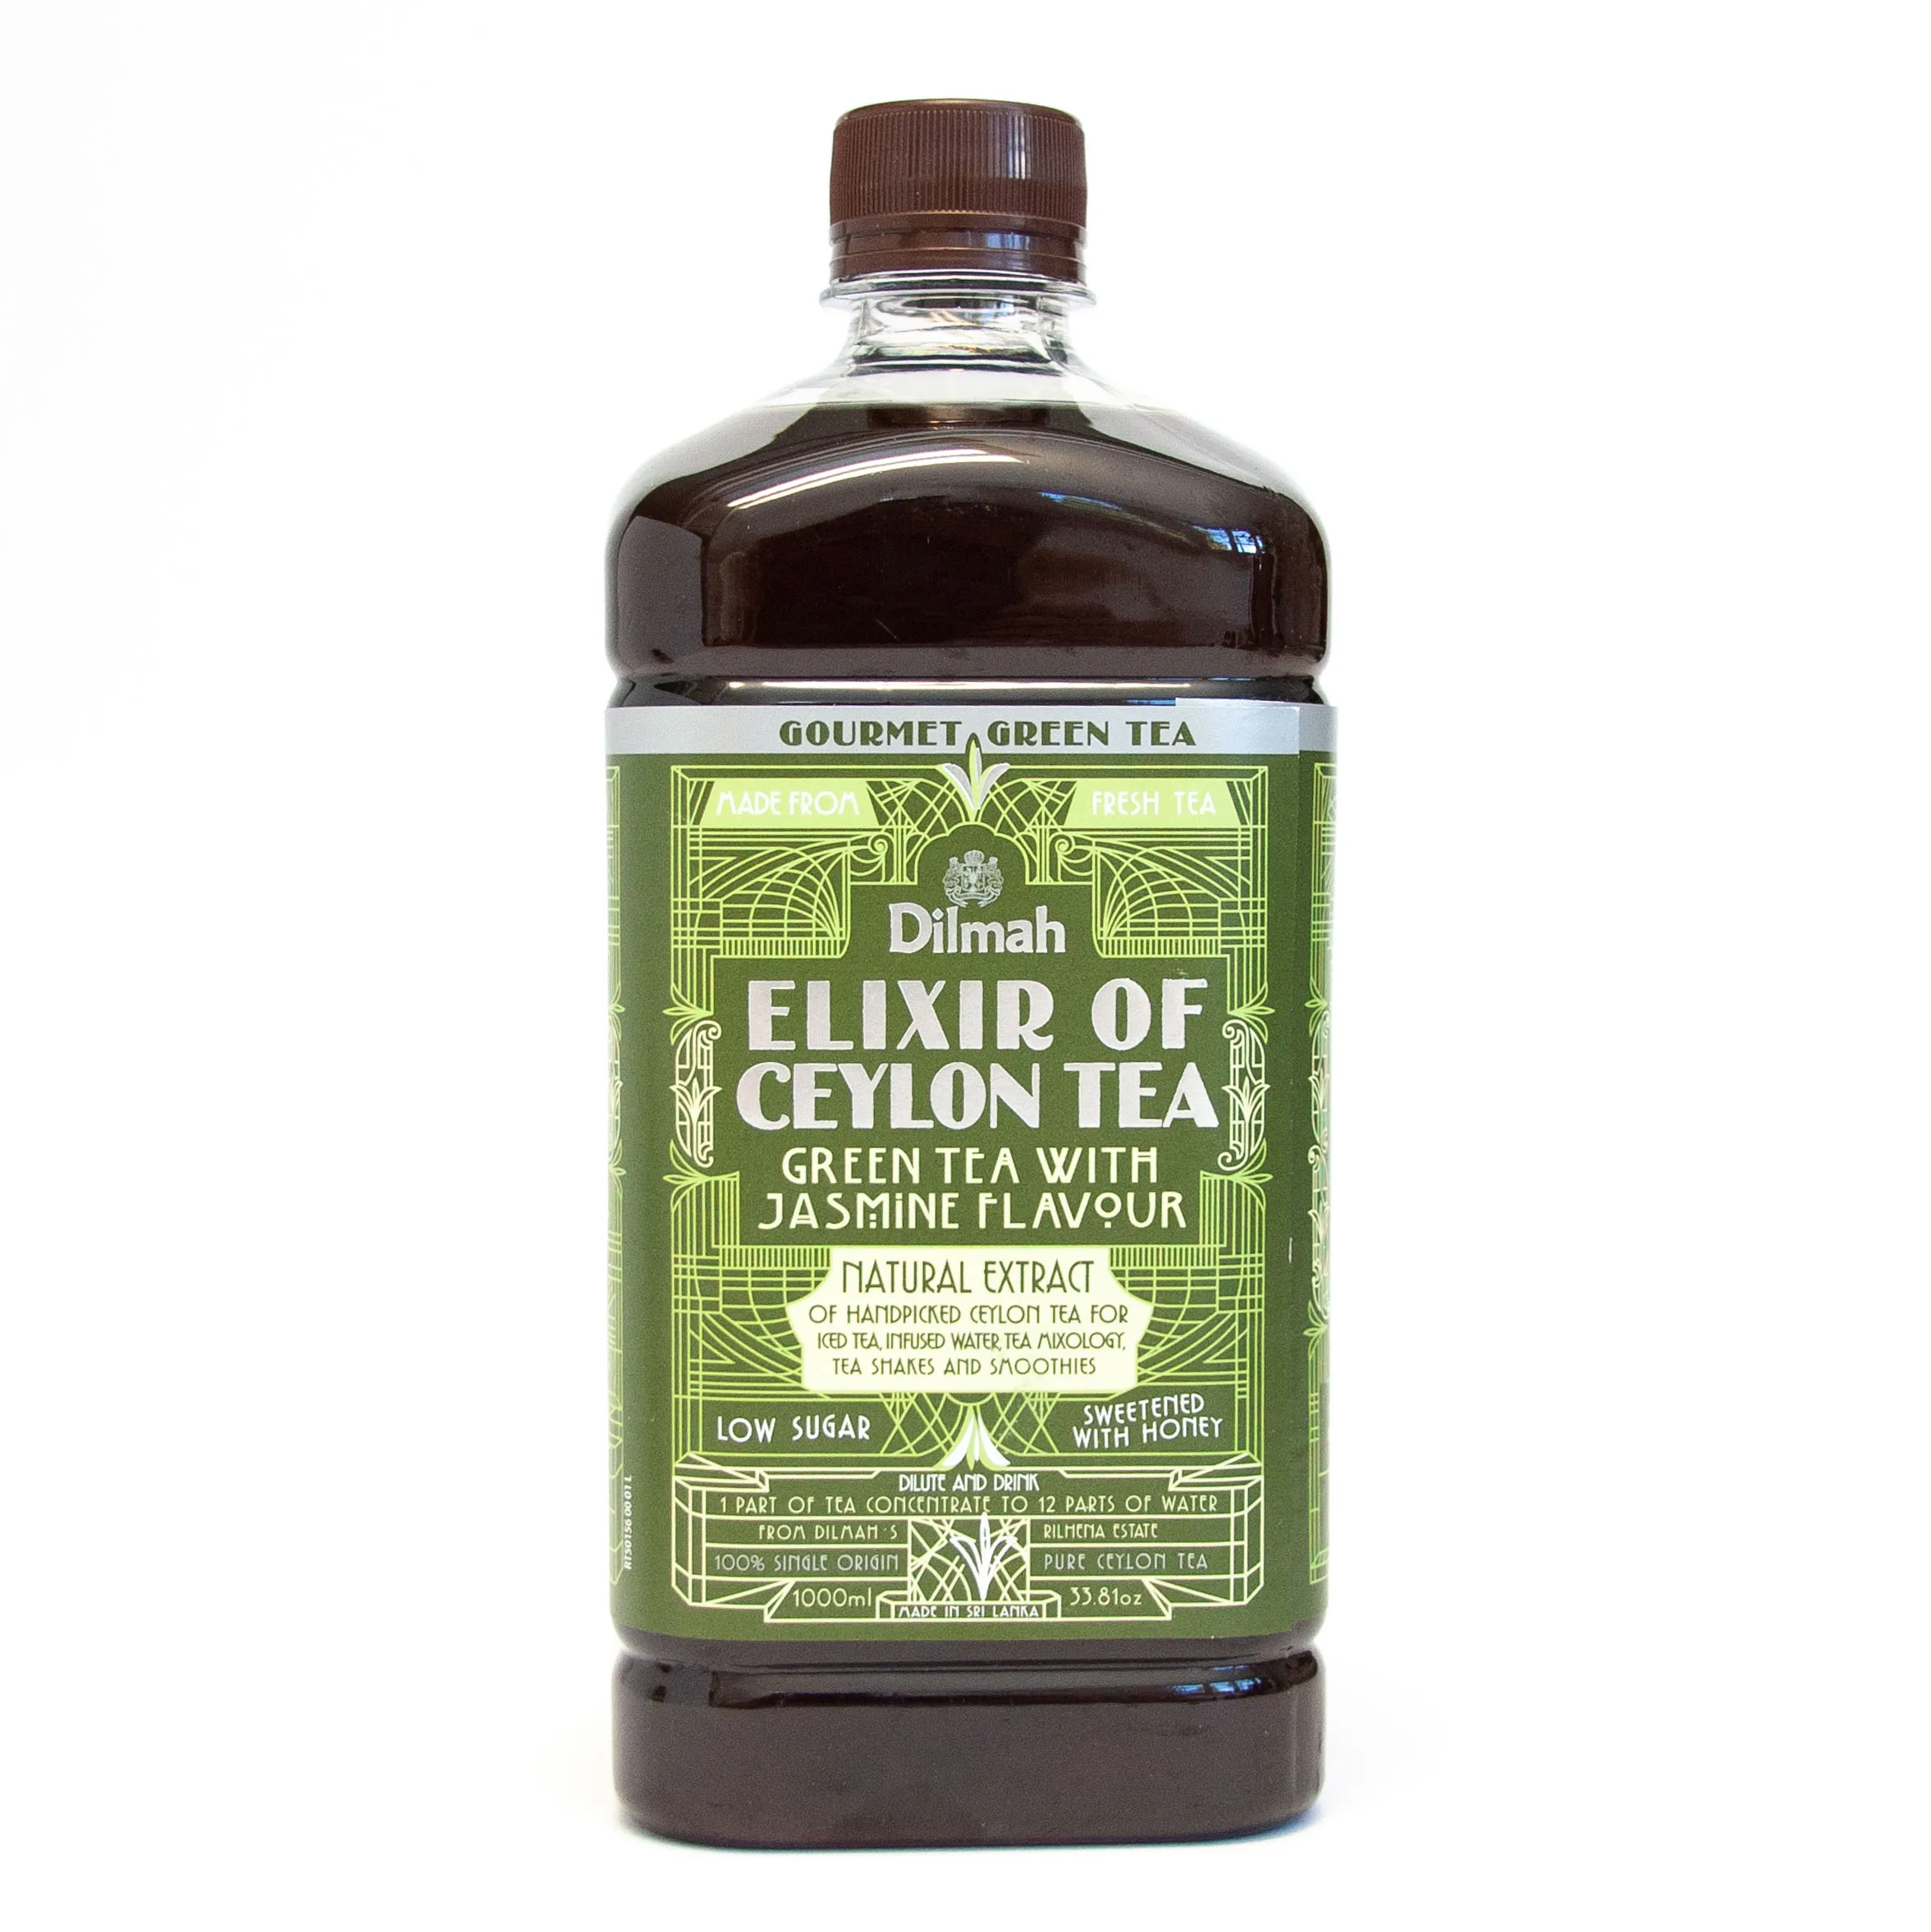 Bottle of Elixir of Green tea with Jasmine flavour